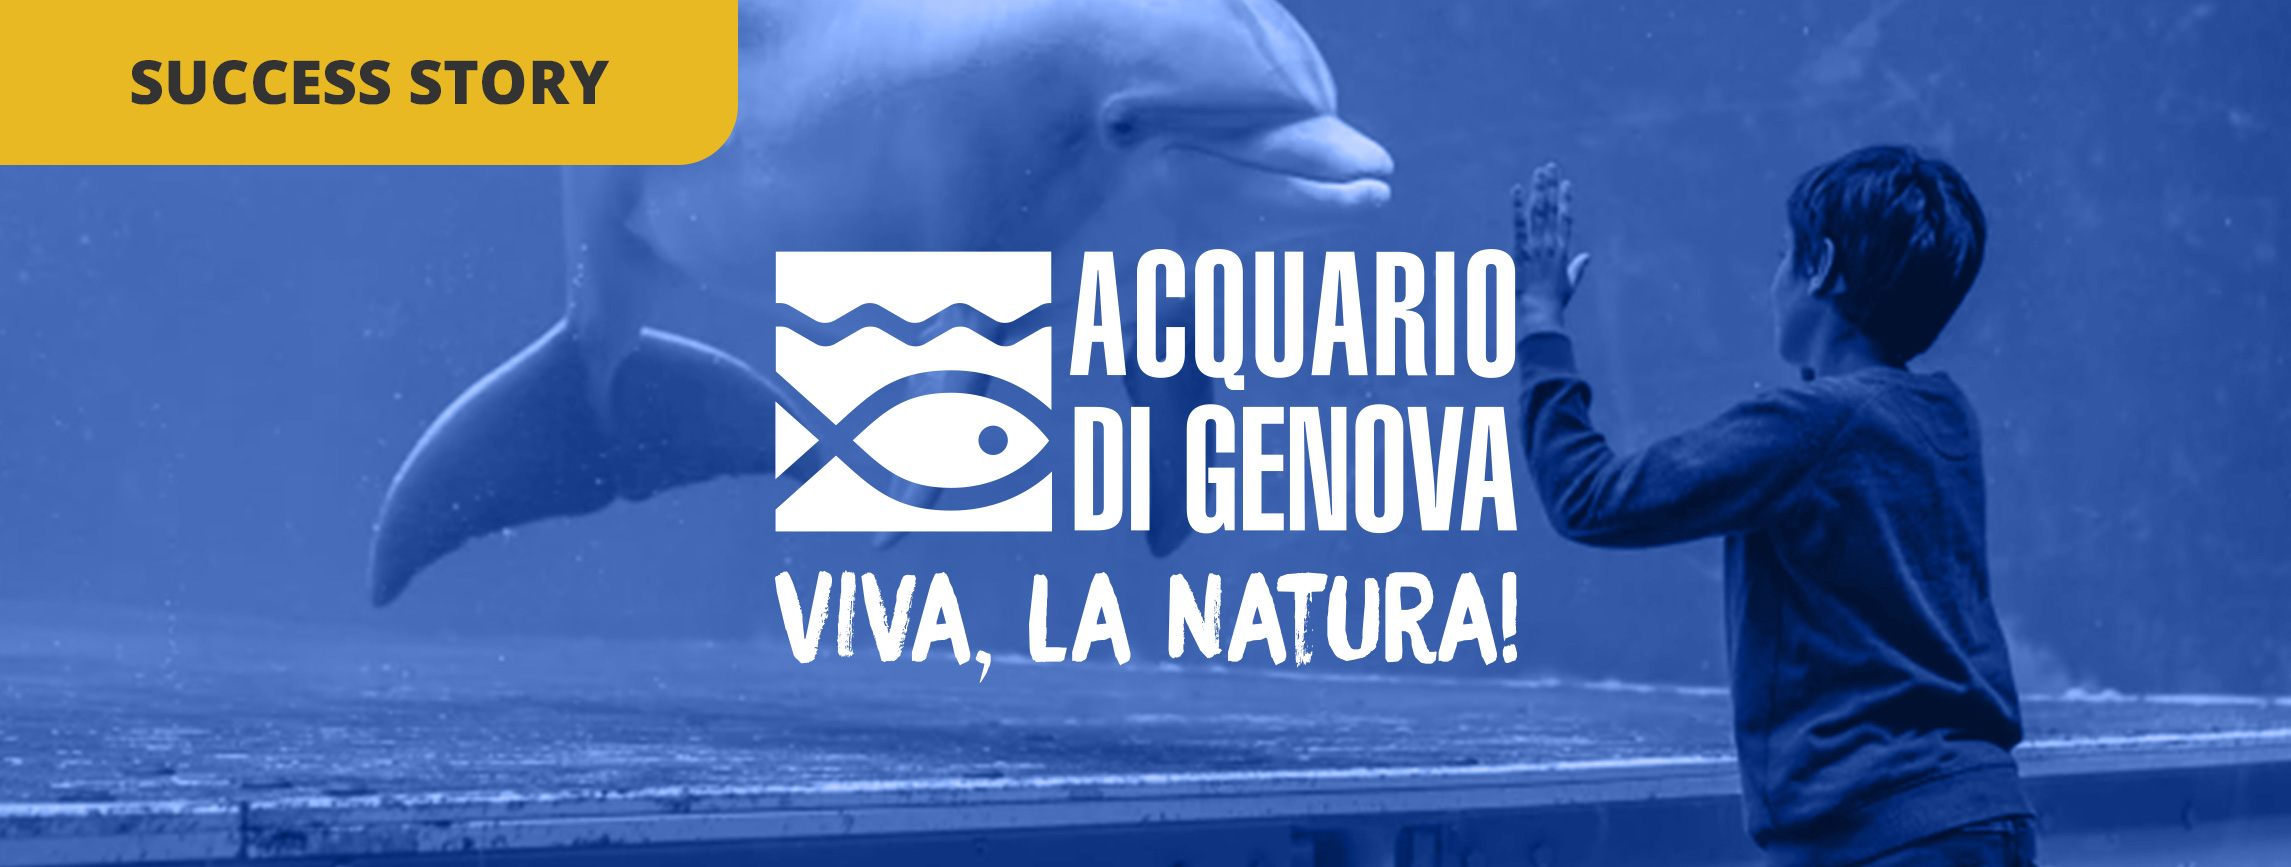 Come l'Acquario di Genova è diventato uno dei 10 migliori ac...